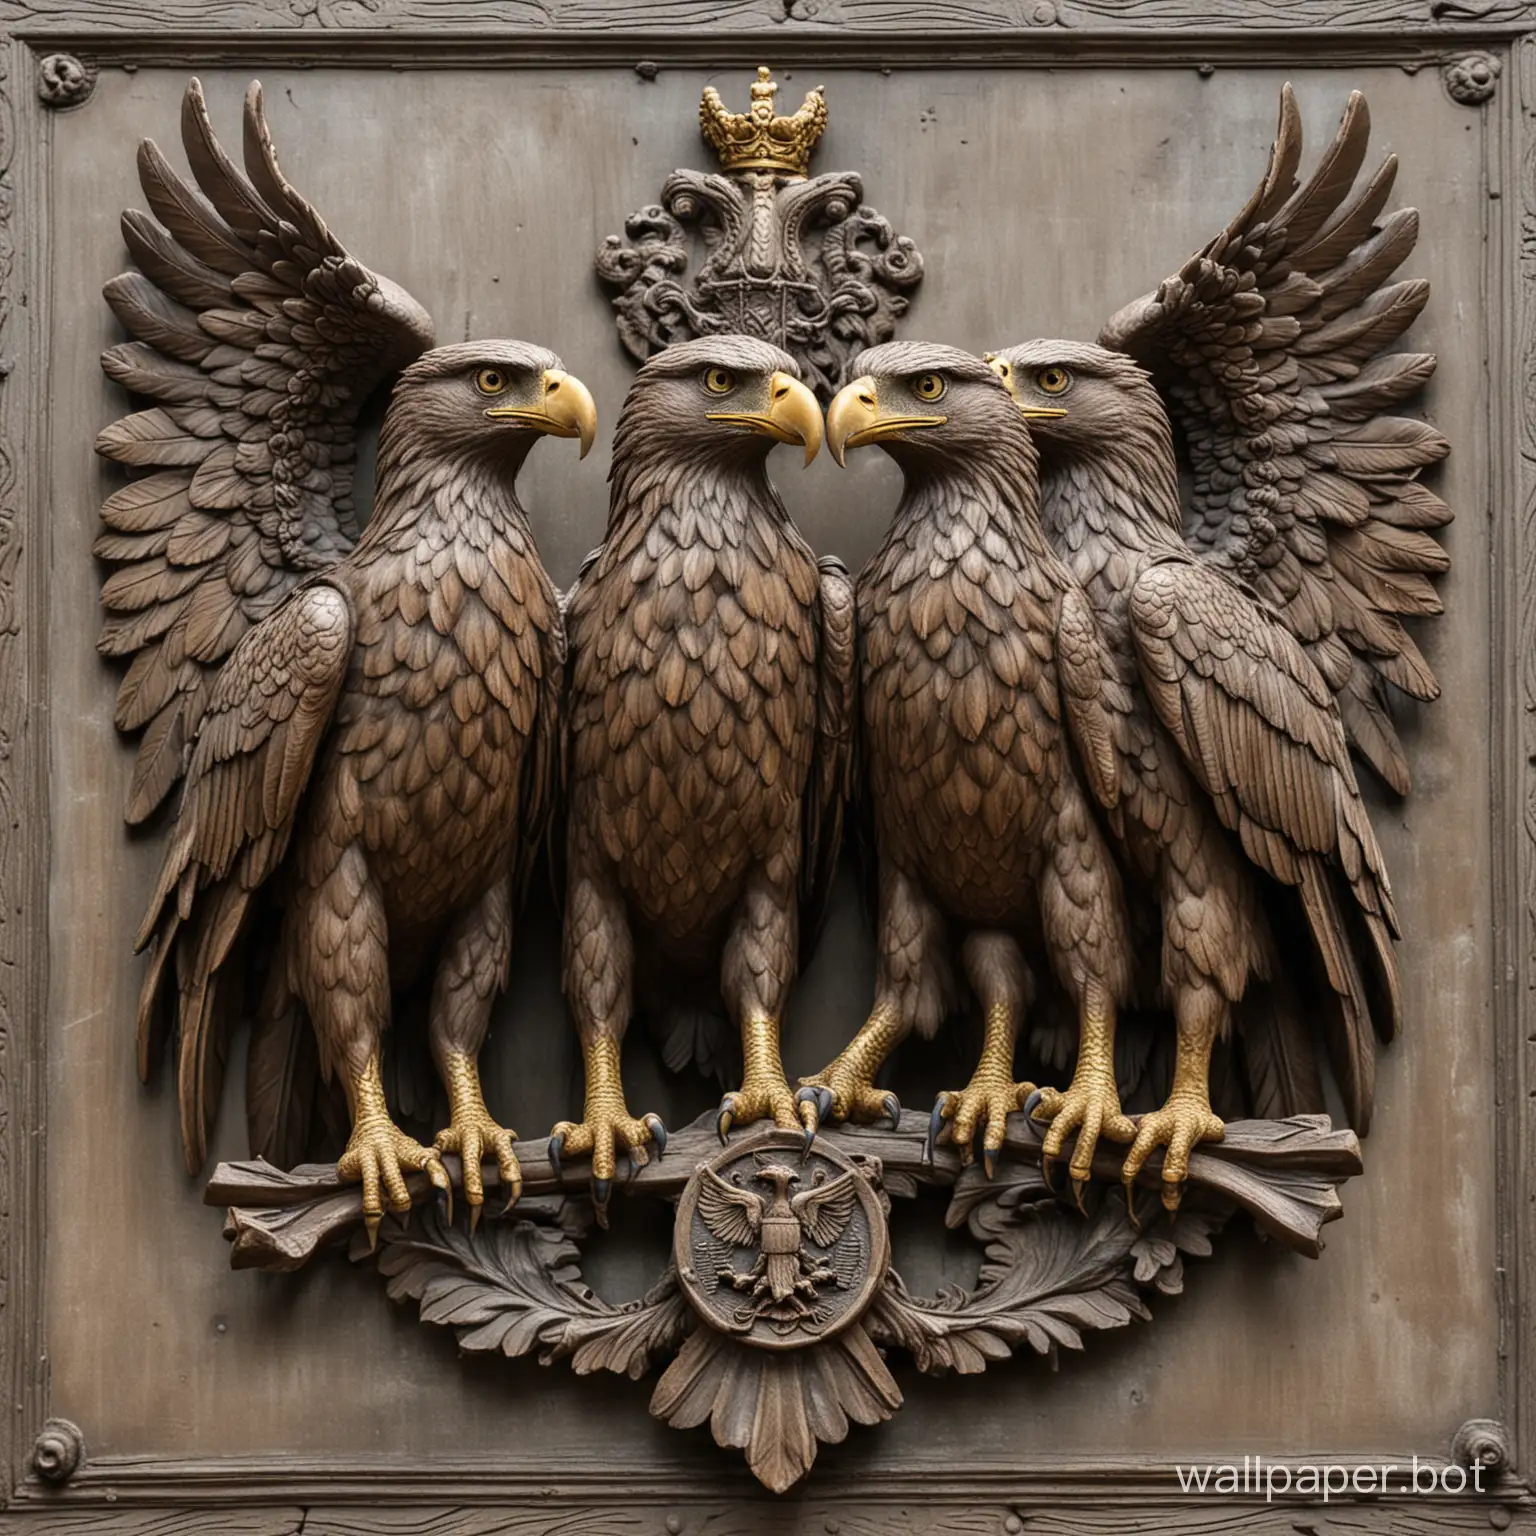 three-headed eagle